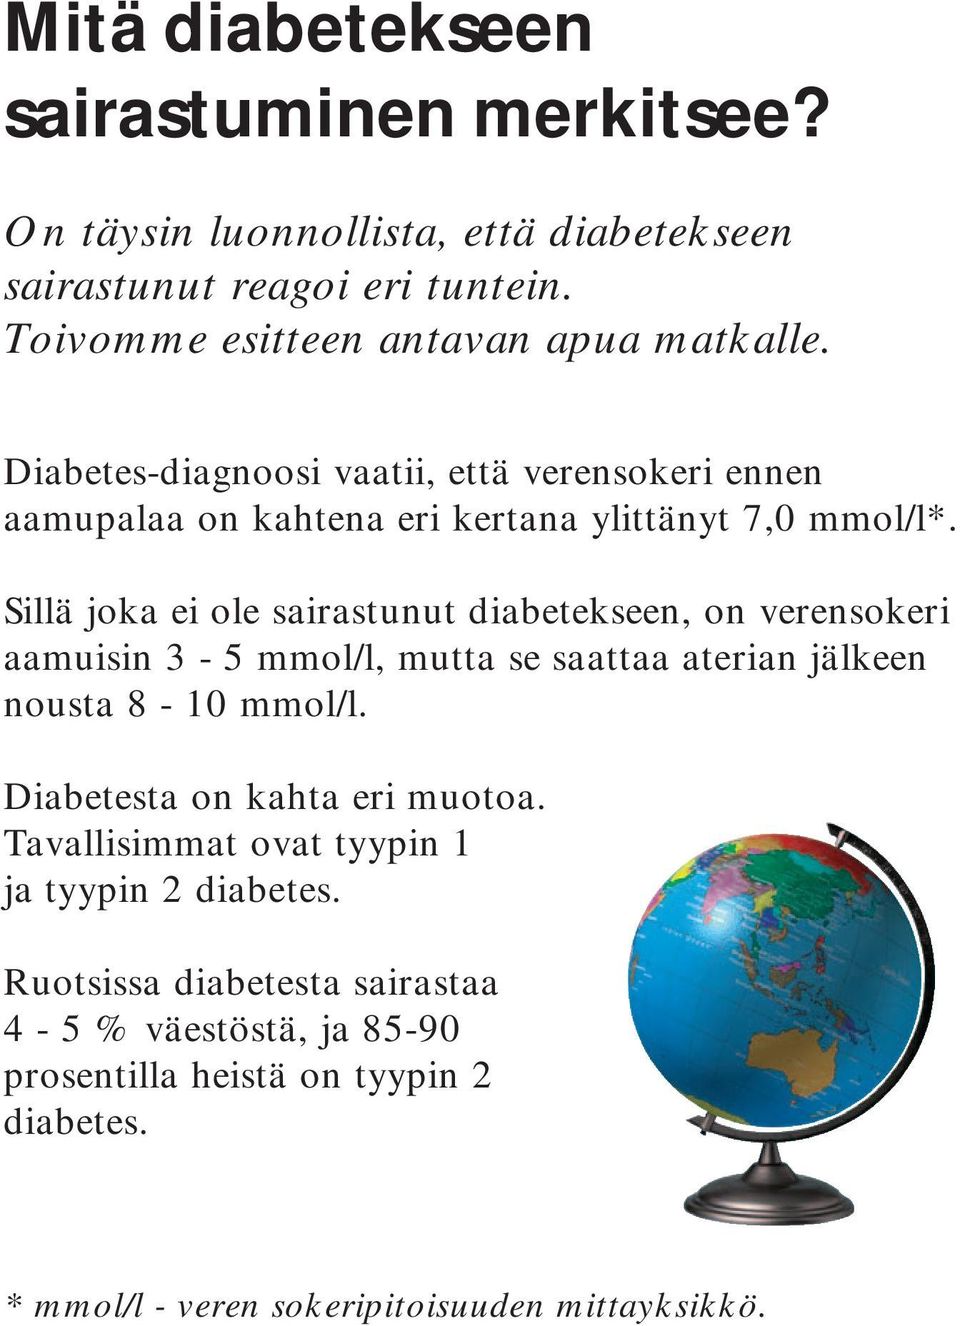 Sillä joka ei ole sairastunut diabetekseen, on verensokeri aamuisin 3-5 mmol/l, mutta se saattaa aterian jälkeen nousta 8-10 mmol/l.